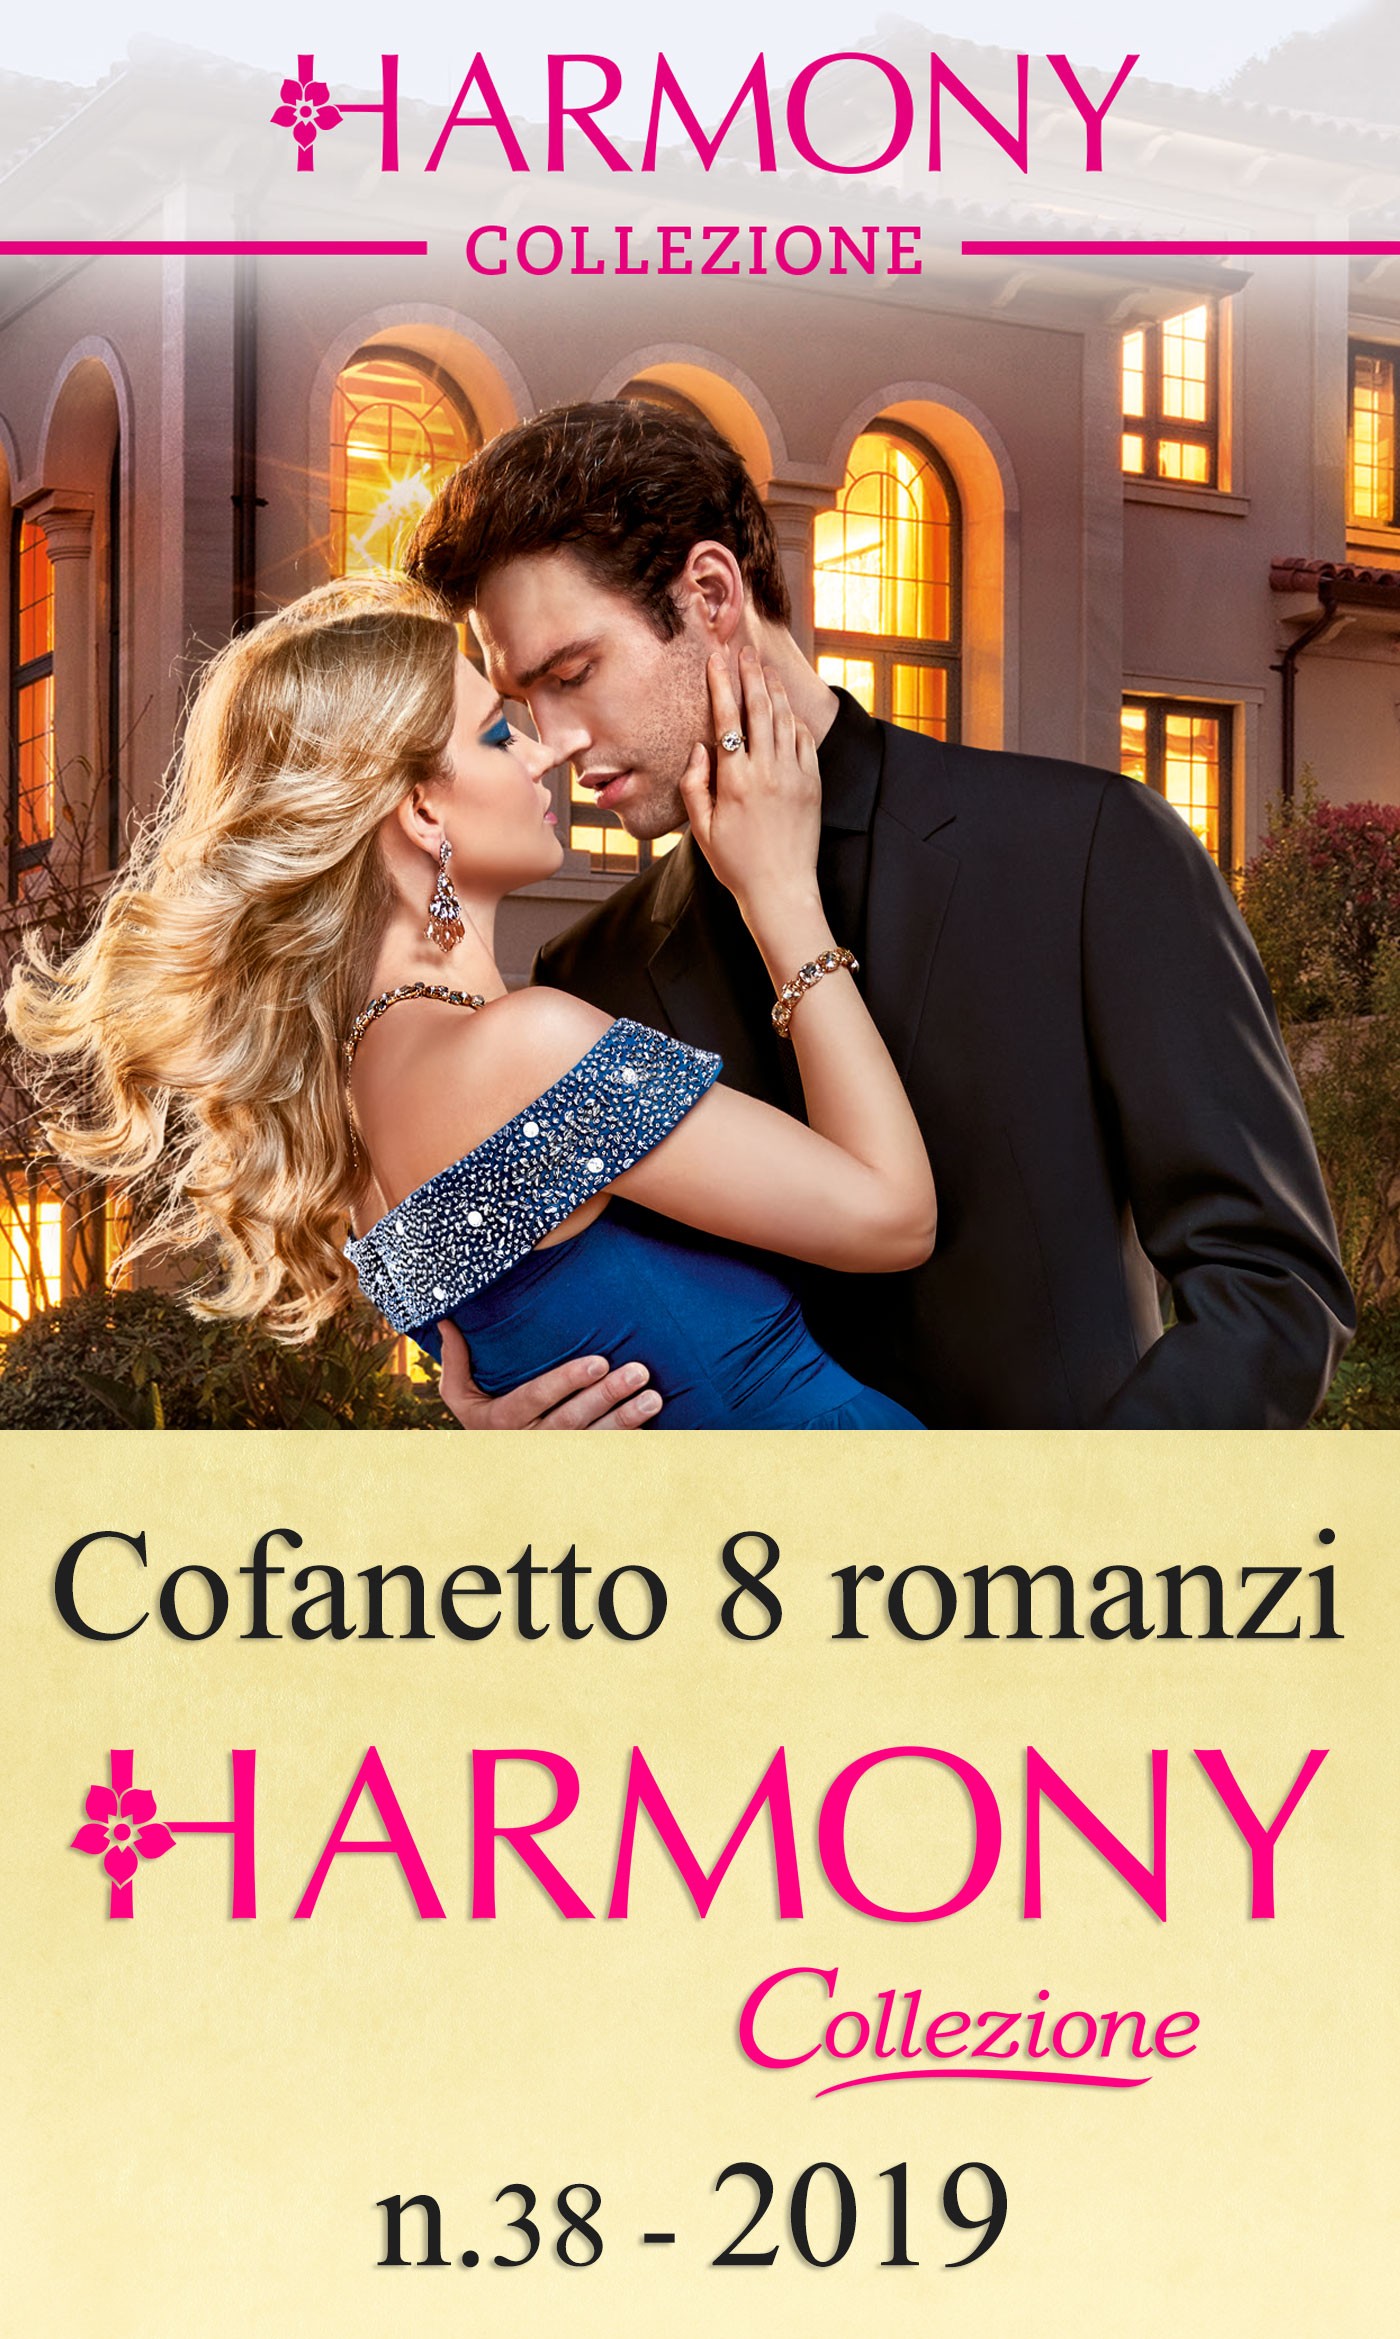 Cofanetto 8 Harmony Collezione n.38/2019 - Librerie.coop